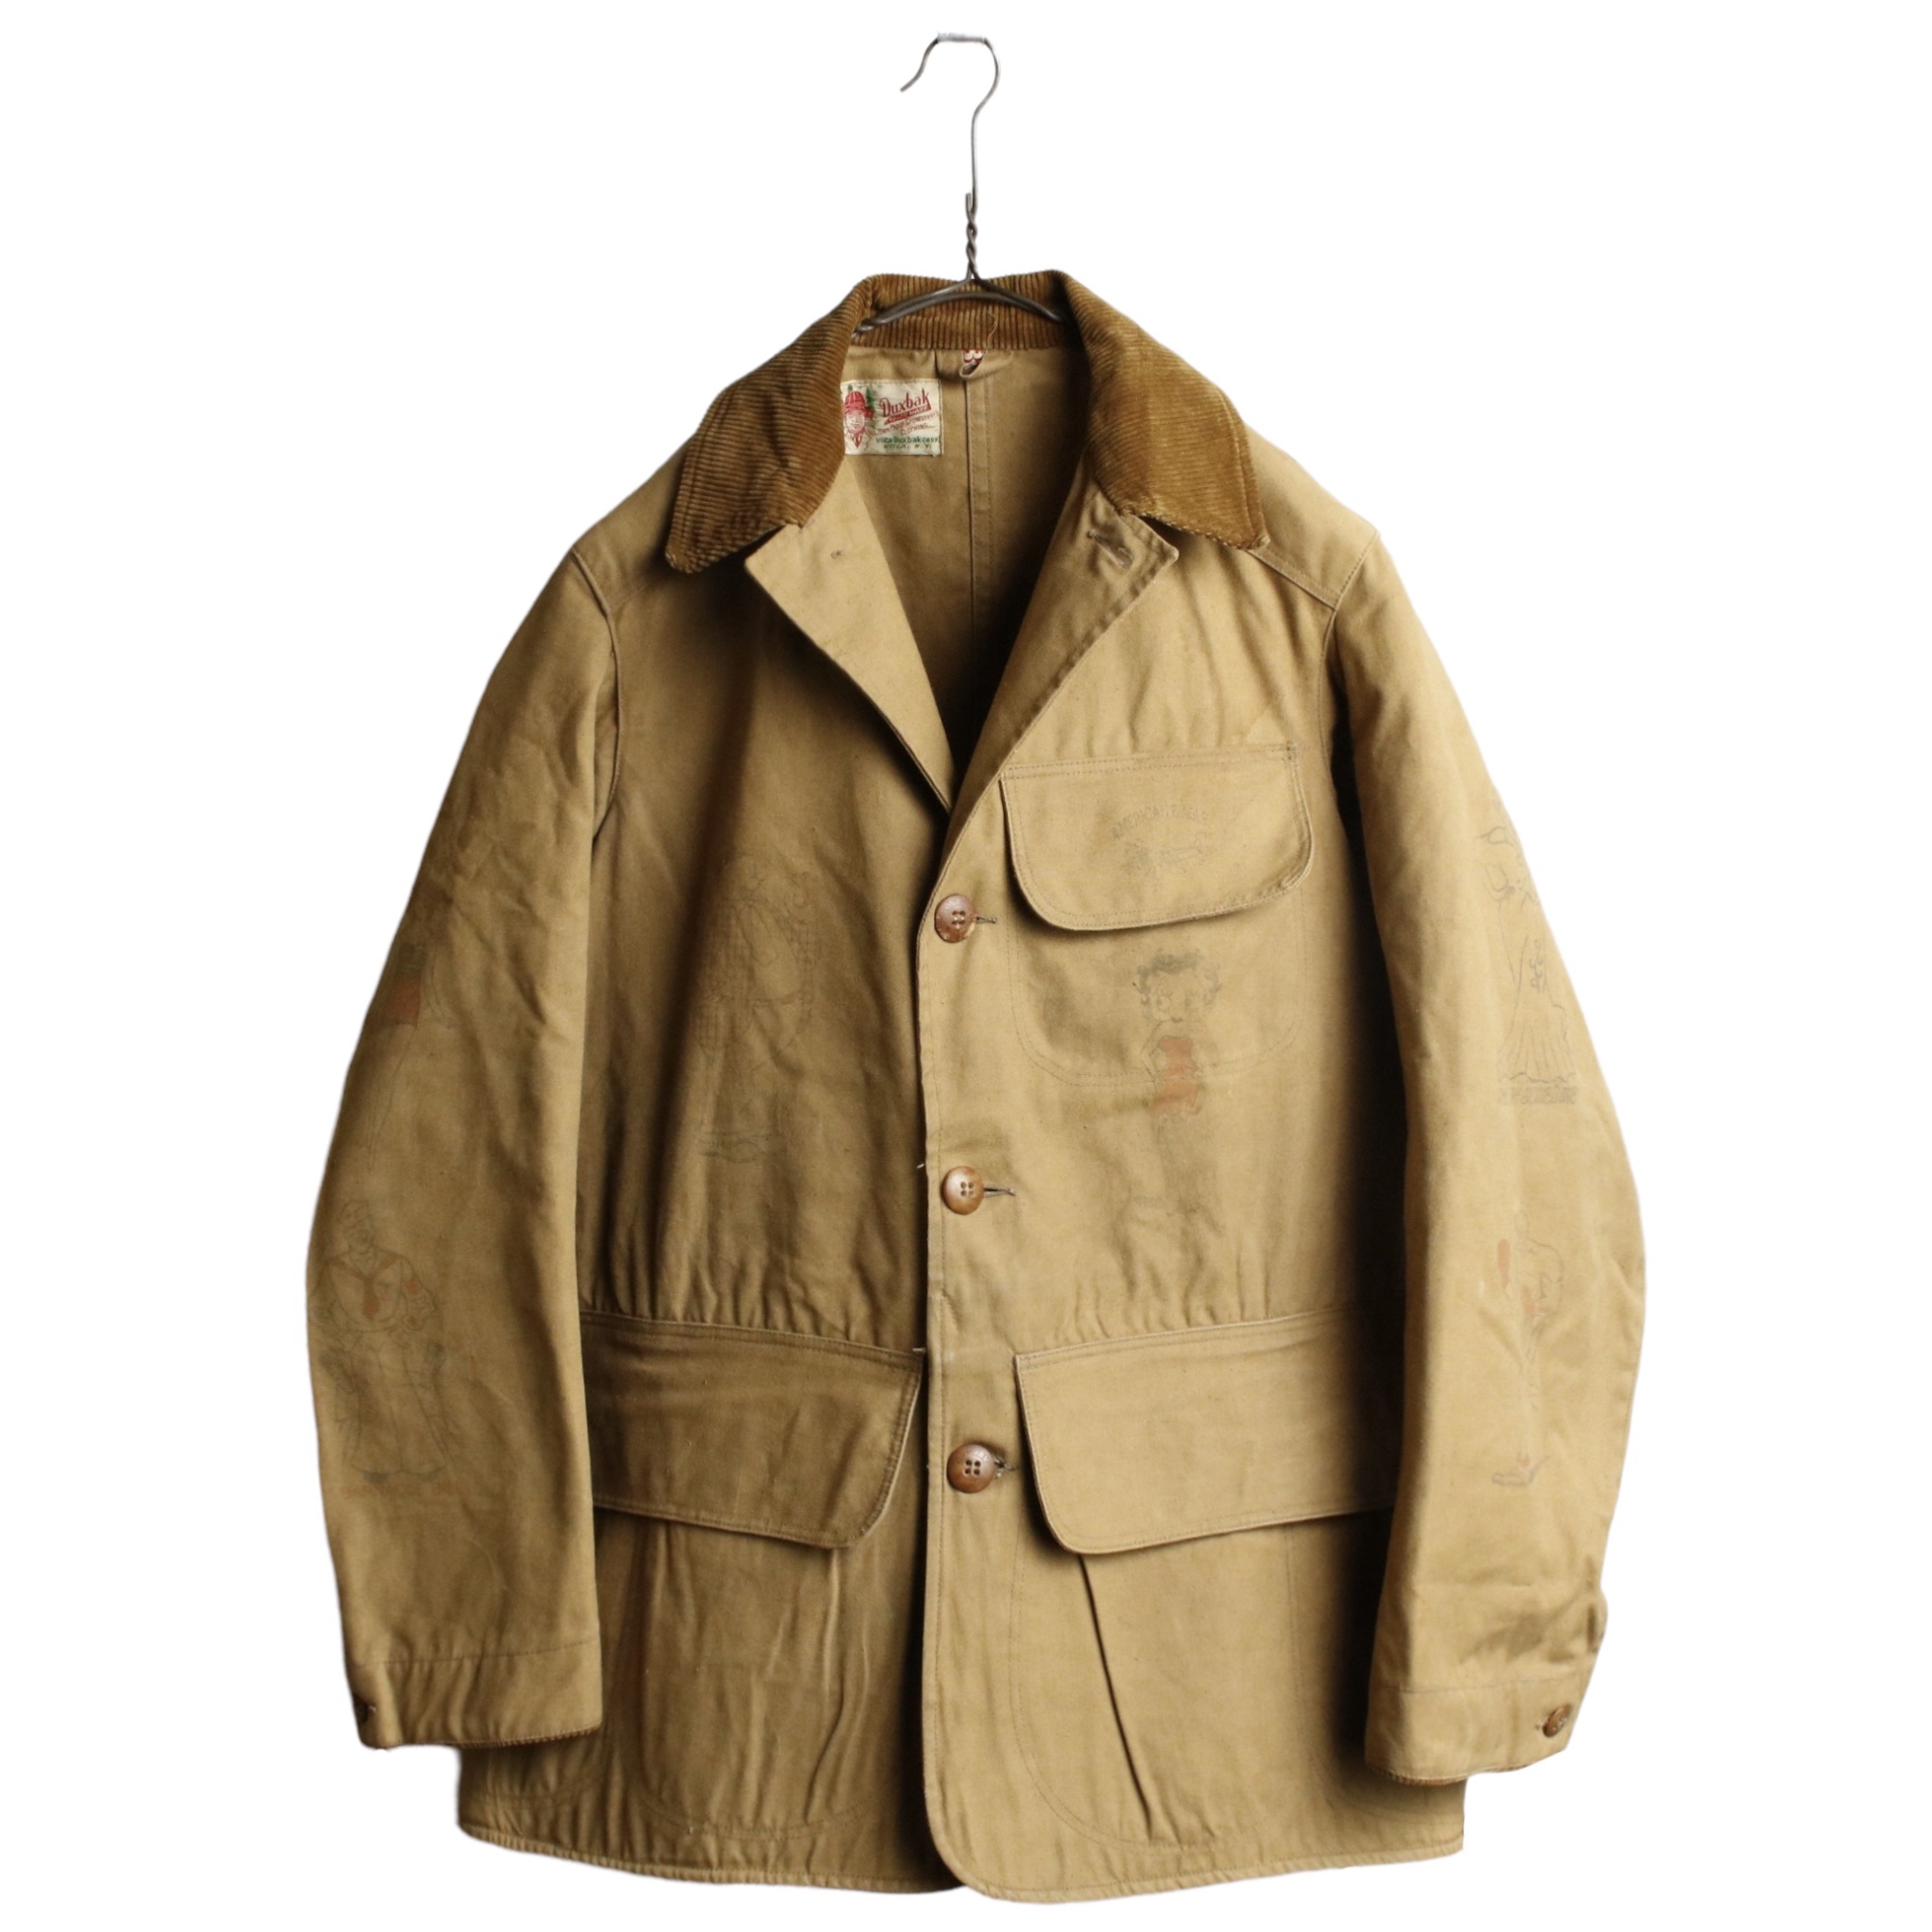 あいみょん50s duxbak / hunting jacket